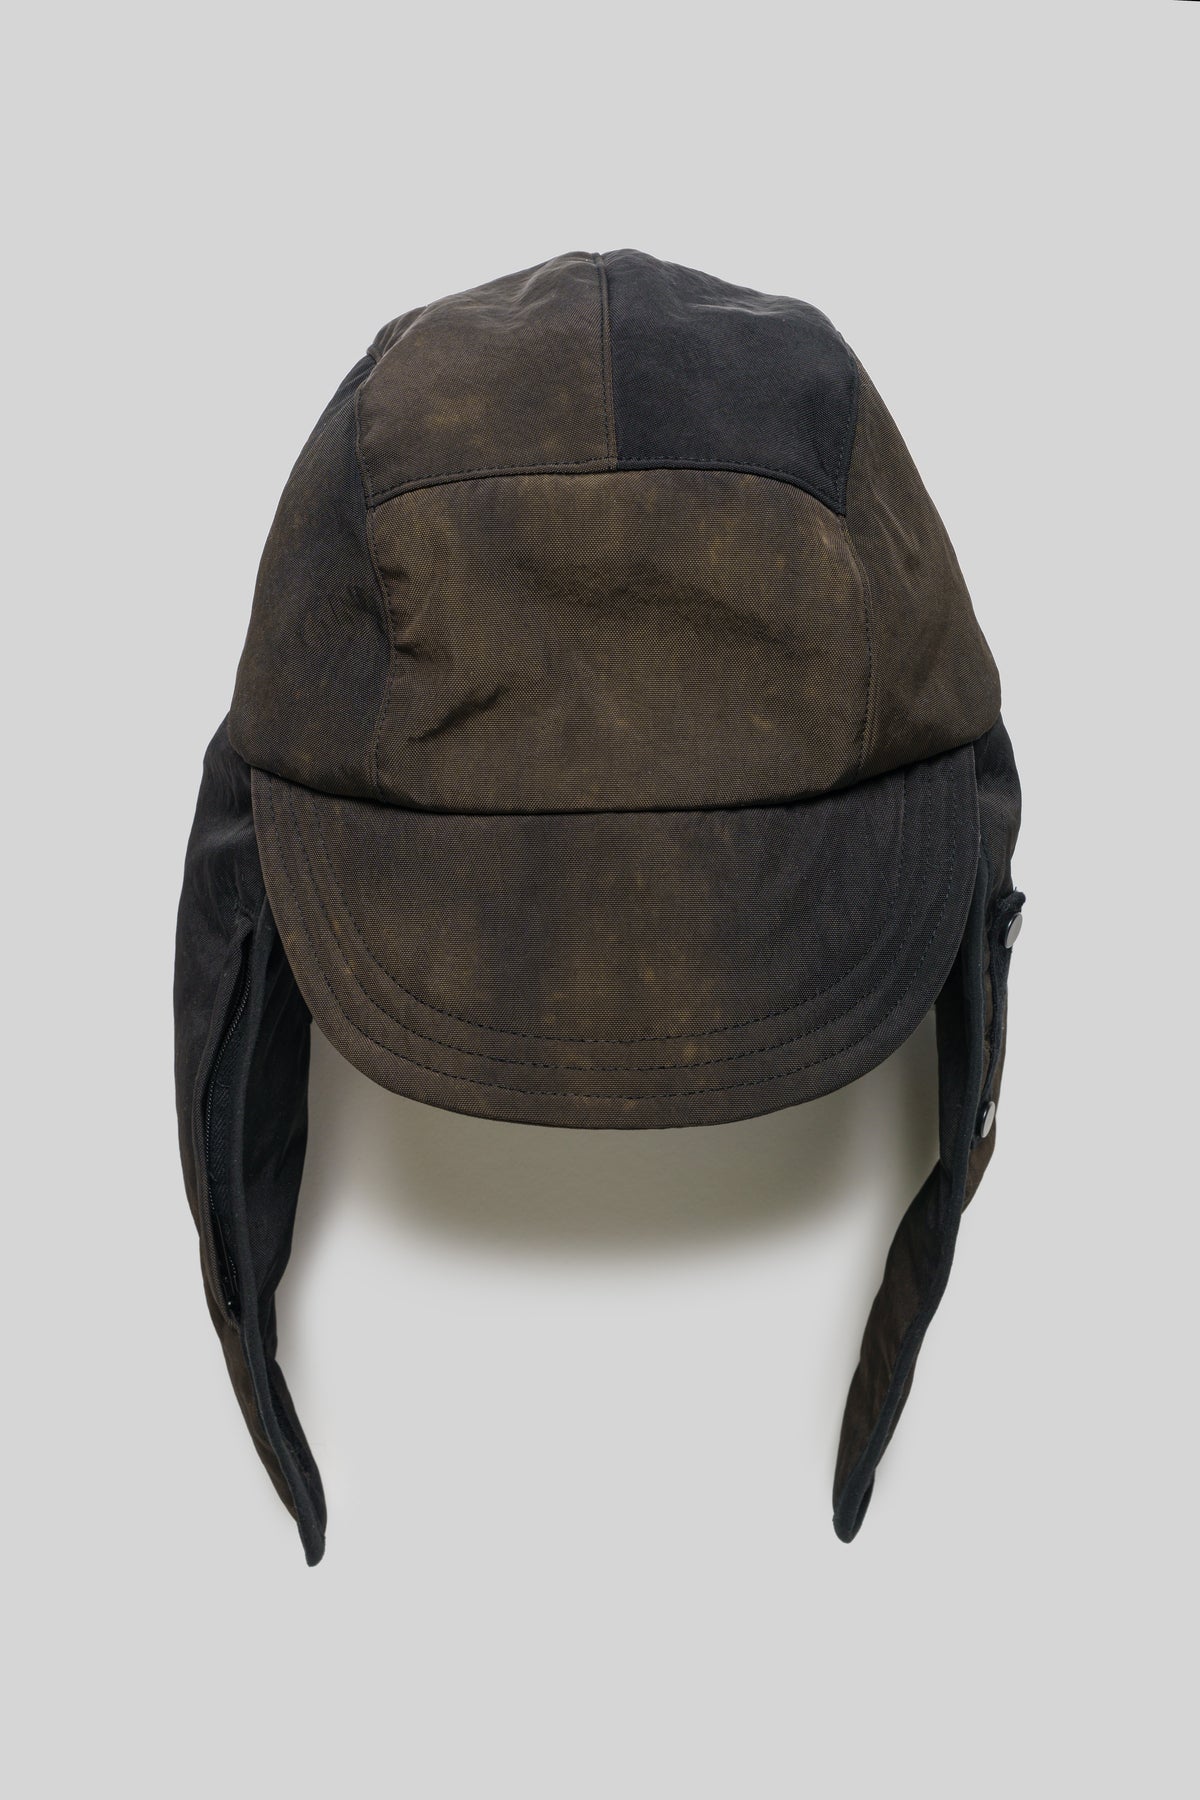 "GRIMM" NYLON TRAPPER HAT